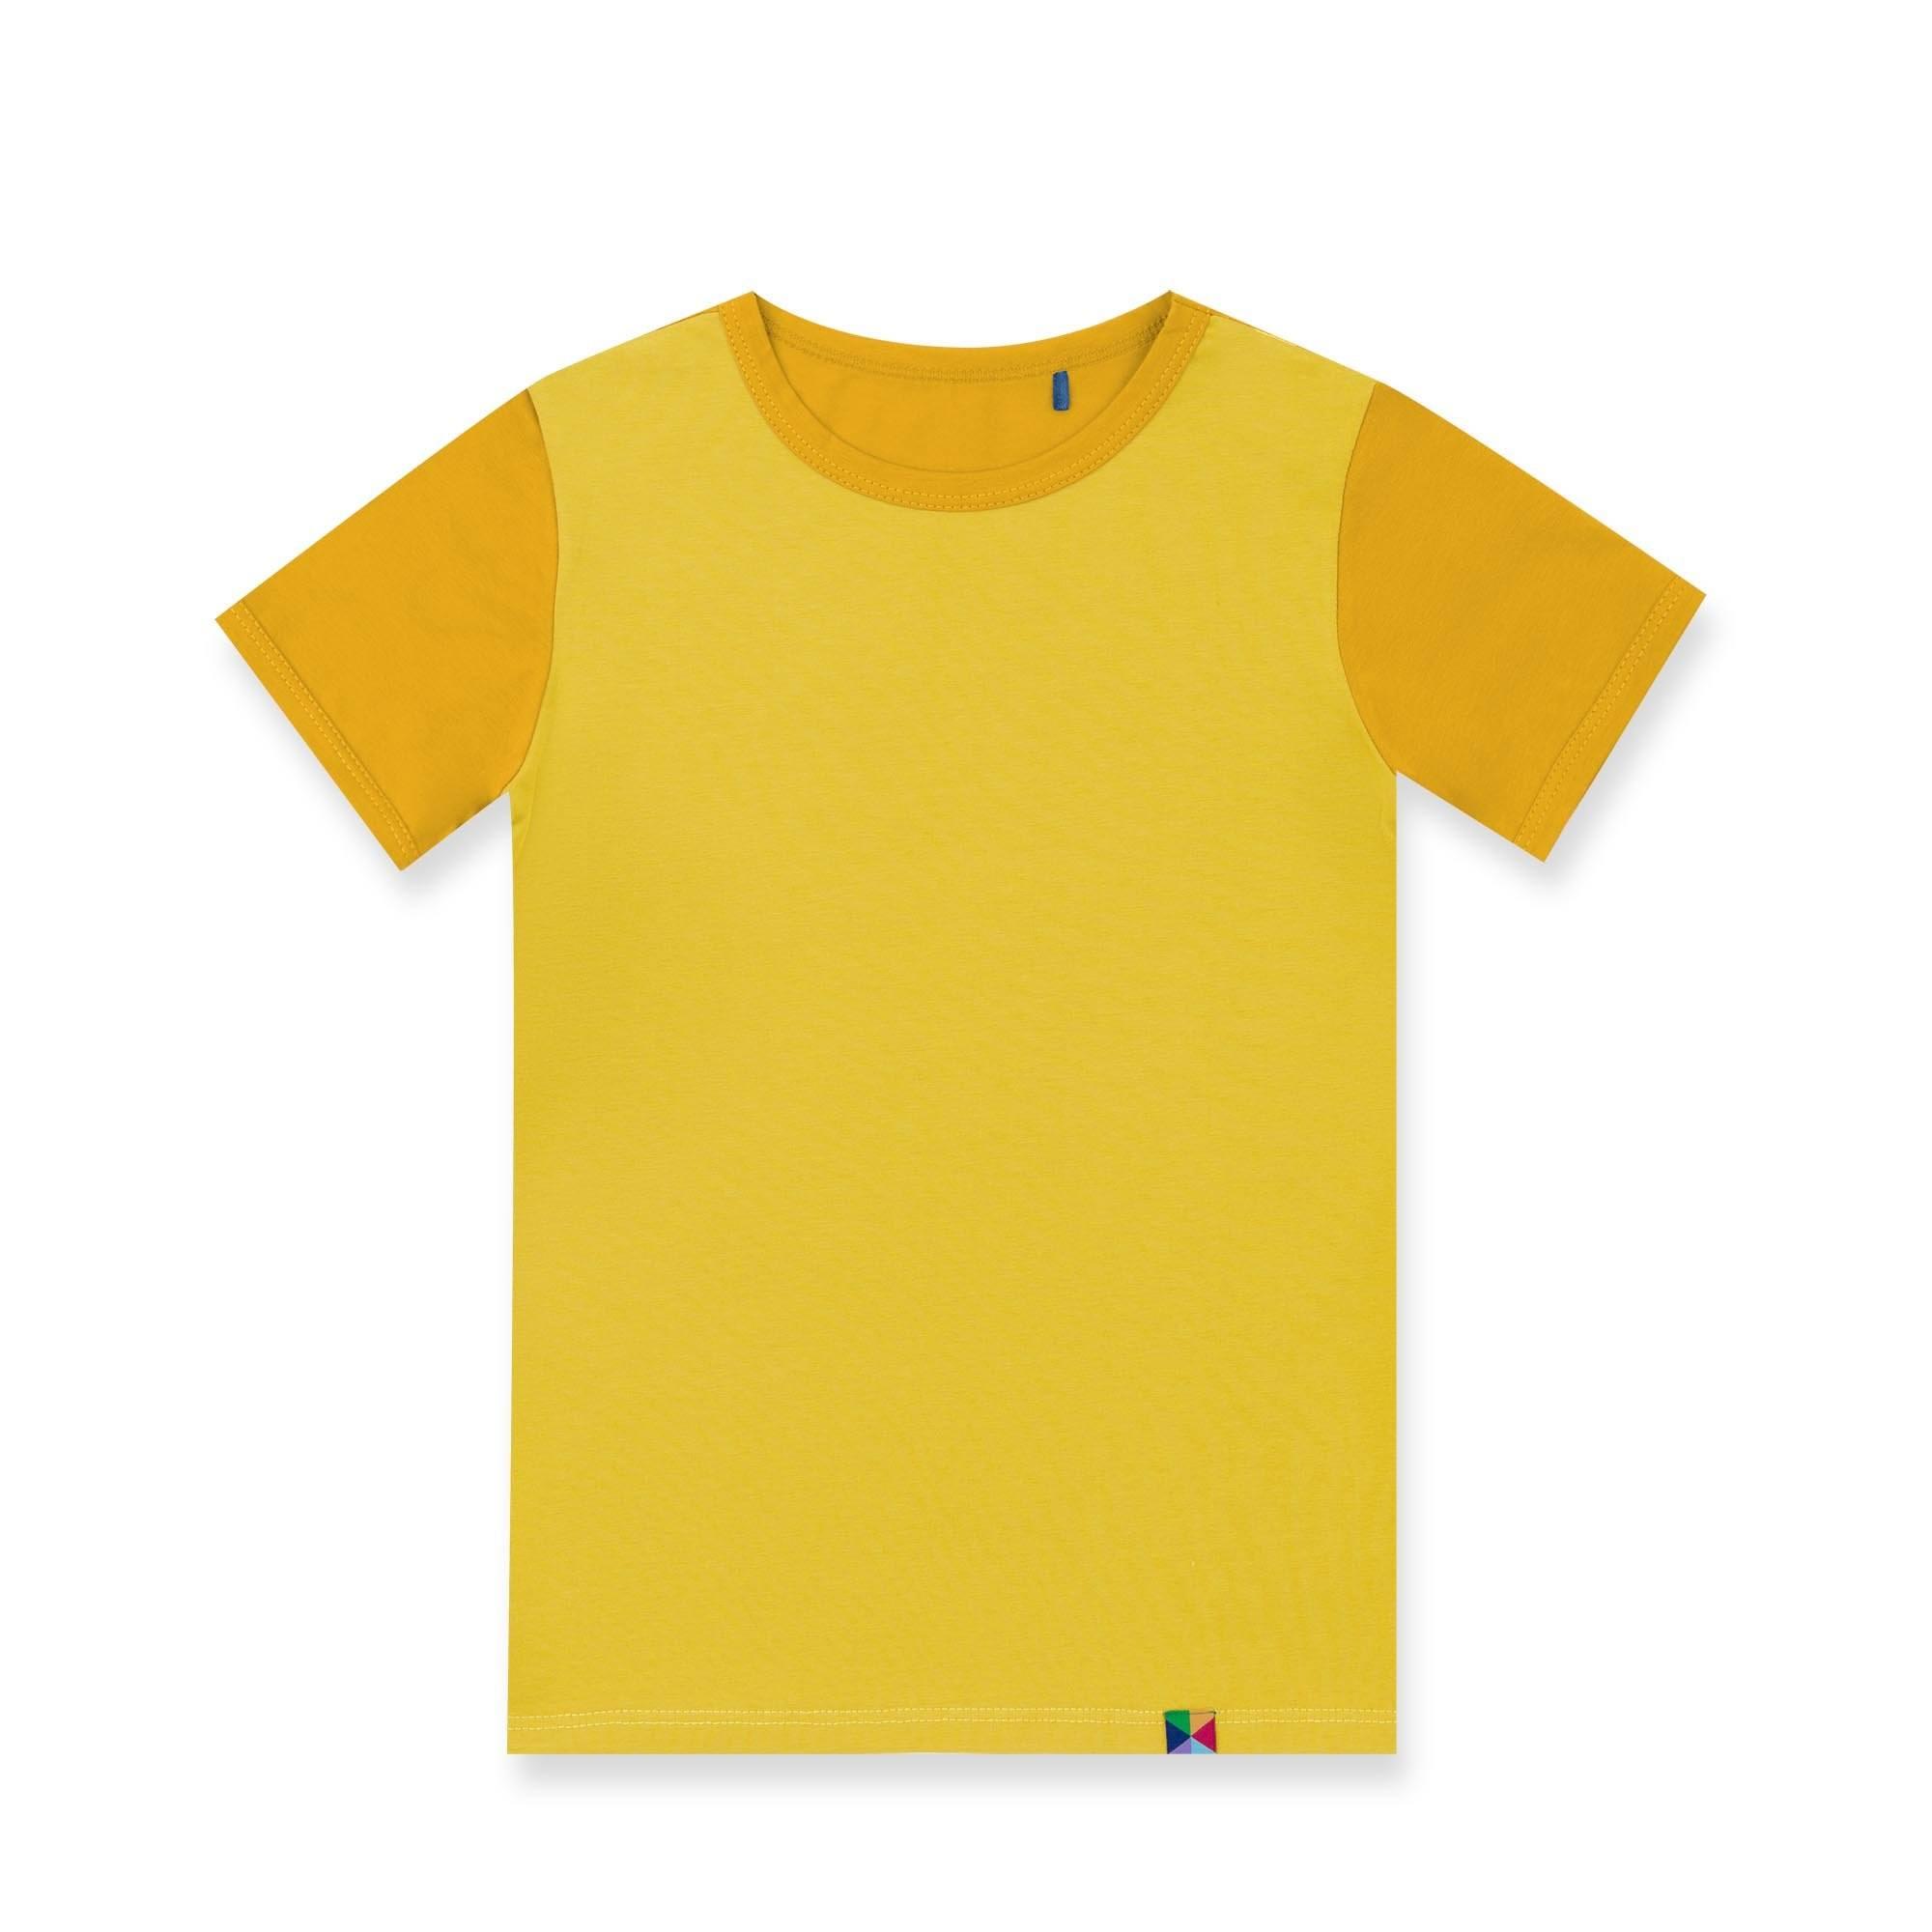 Żółto-musztardowa koszulka dwukolorowa